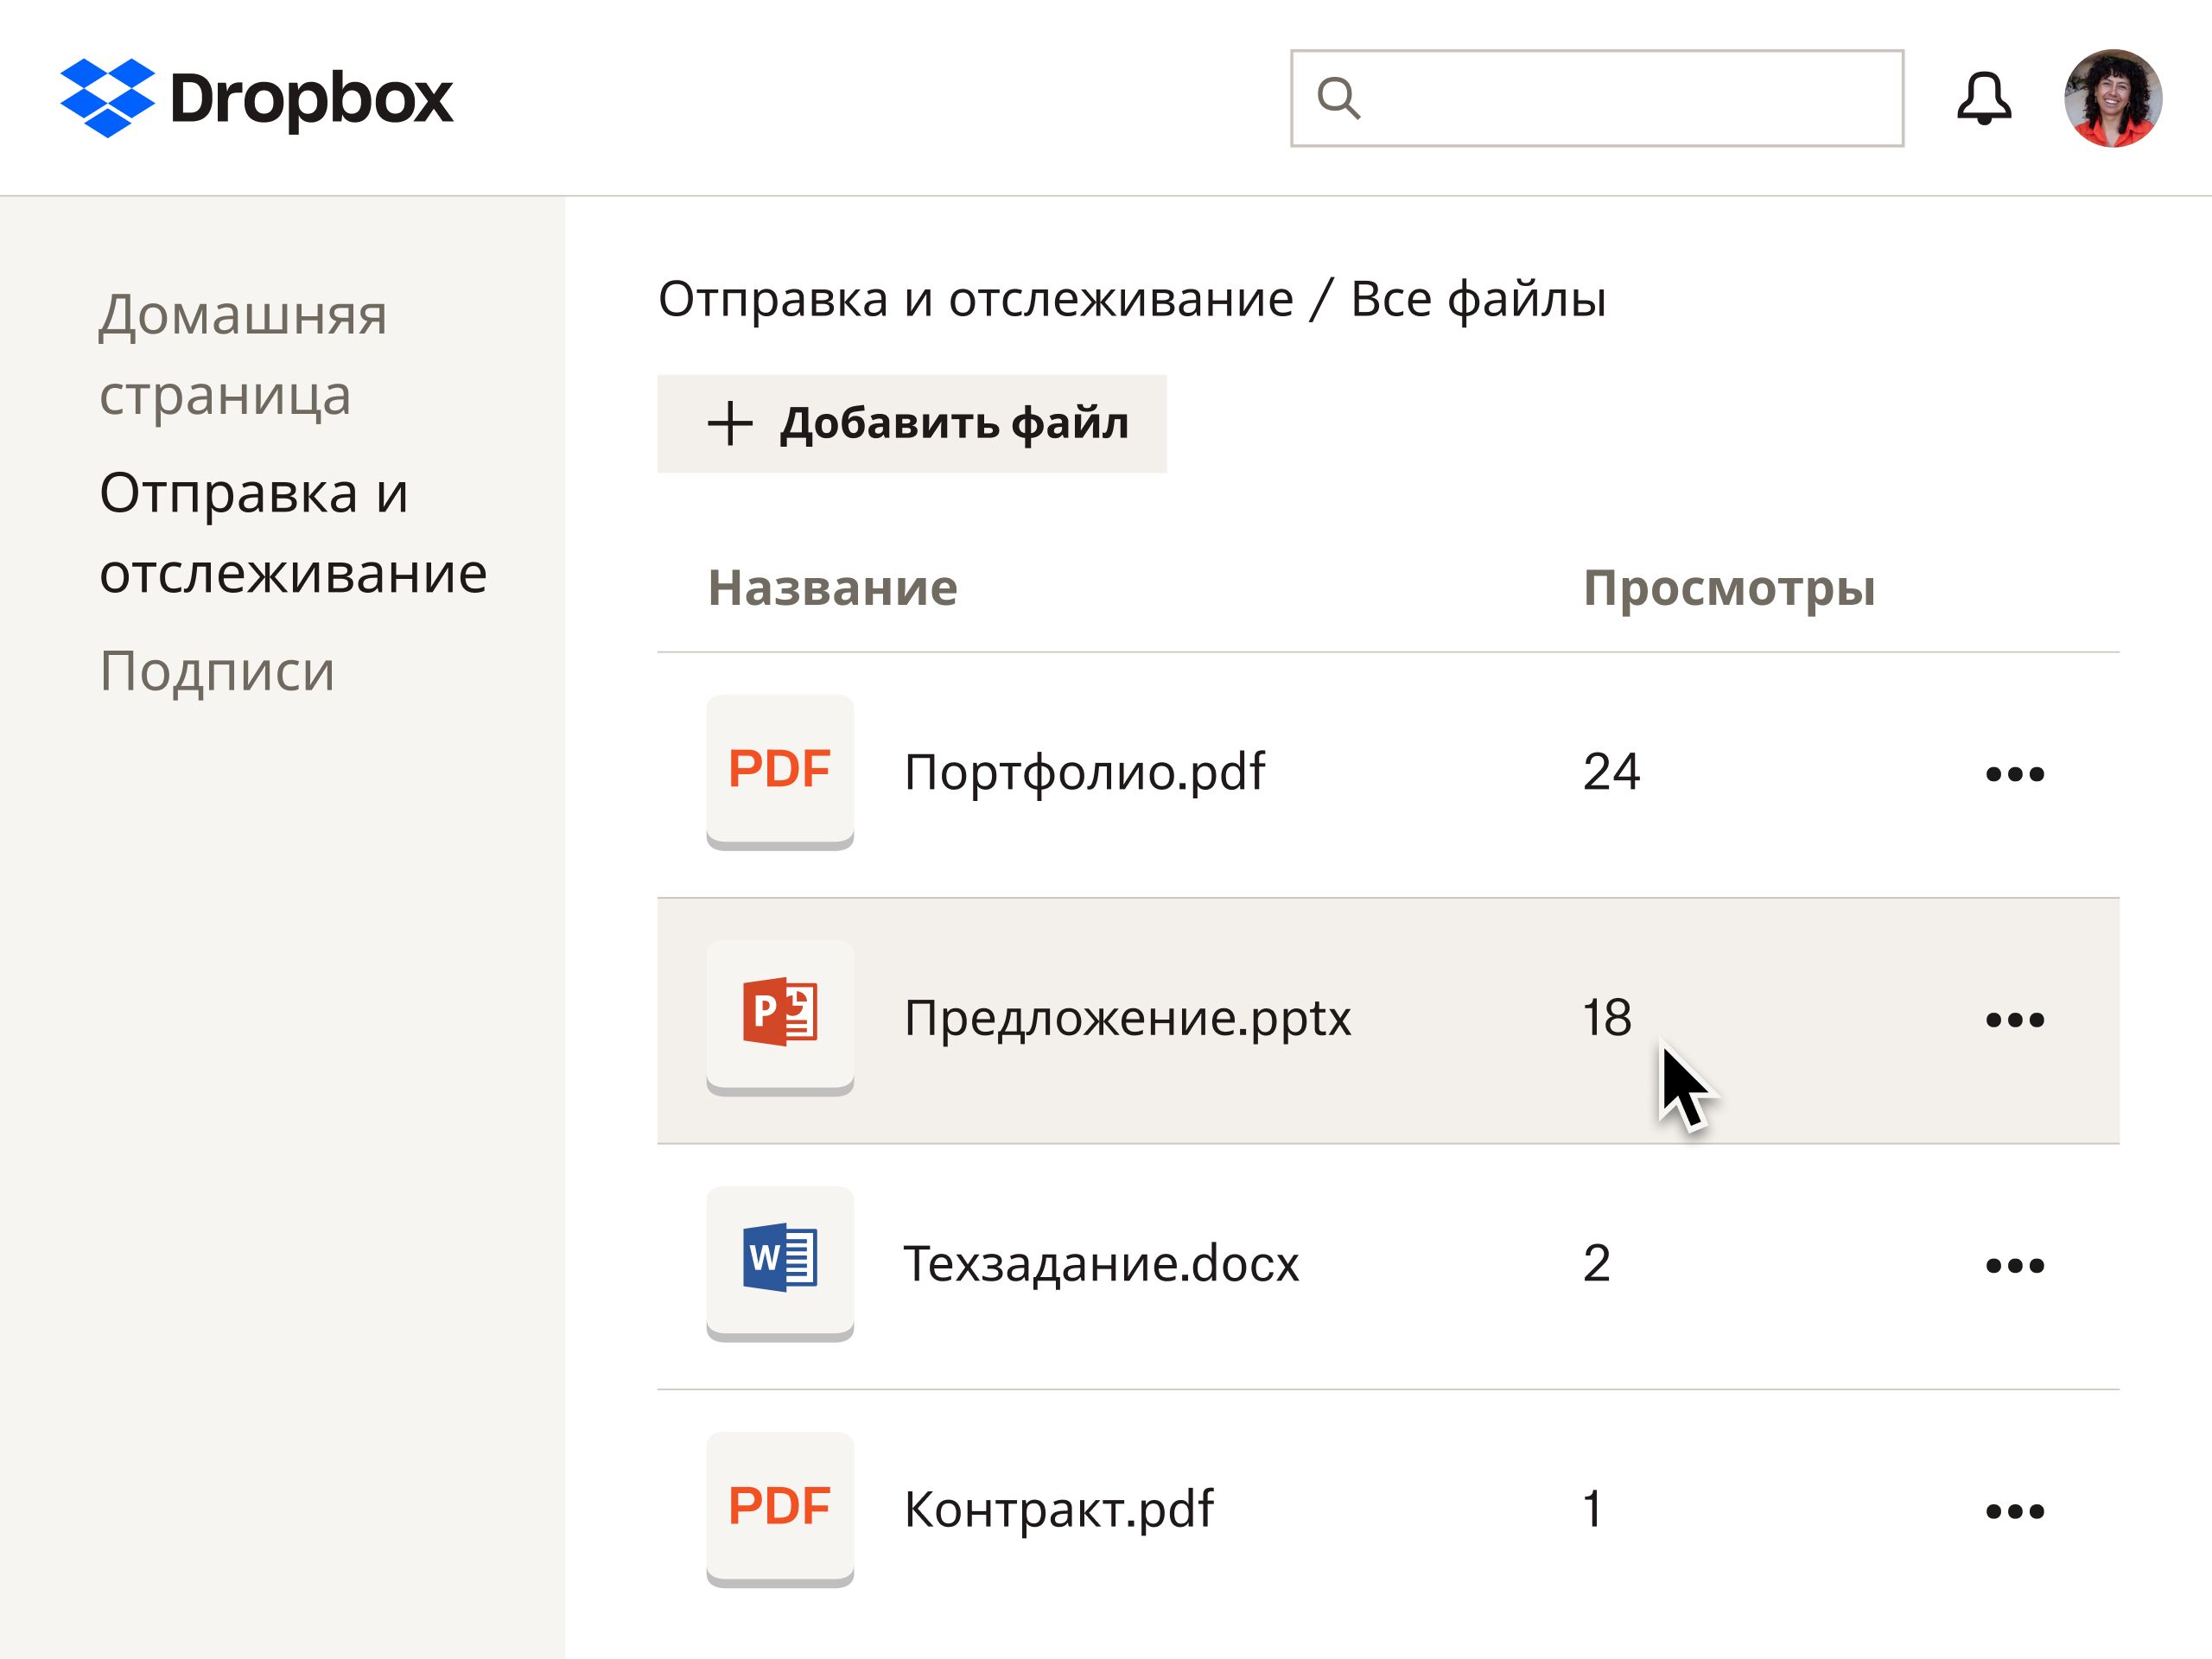 Пользовательский интерфейс для отправки и отслеживания файлов в Dropbox